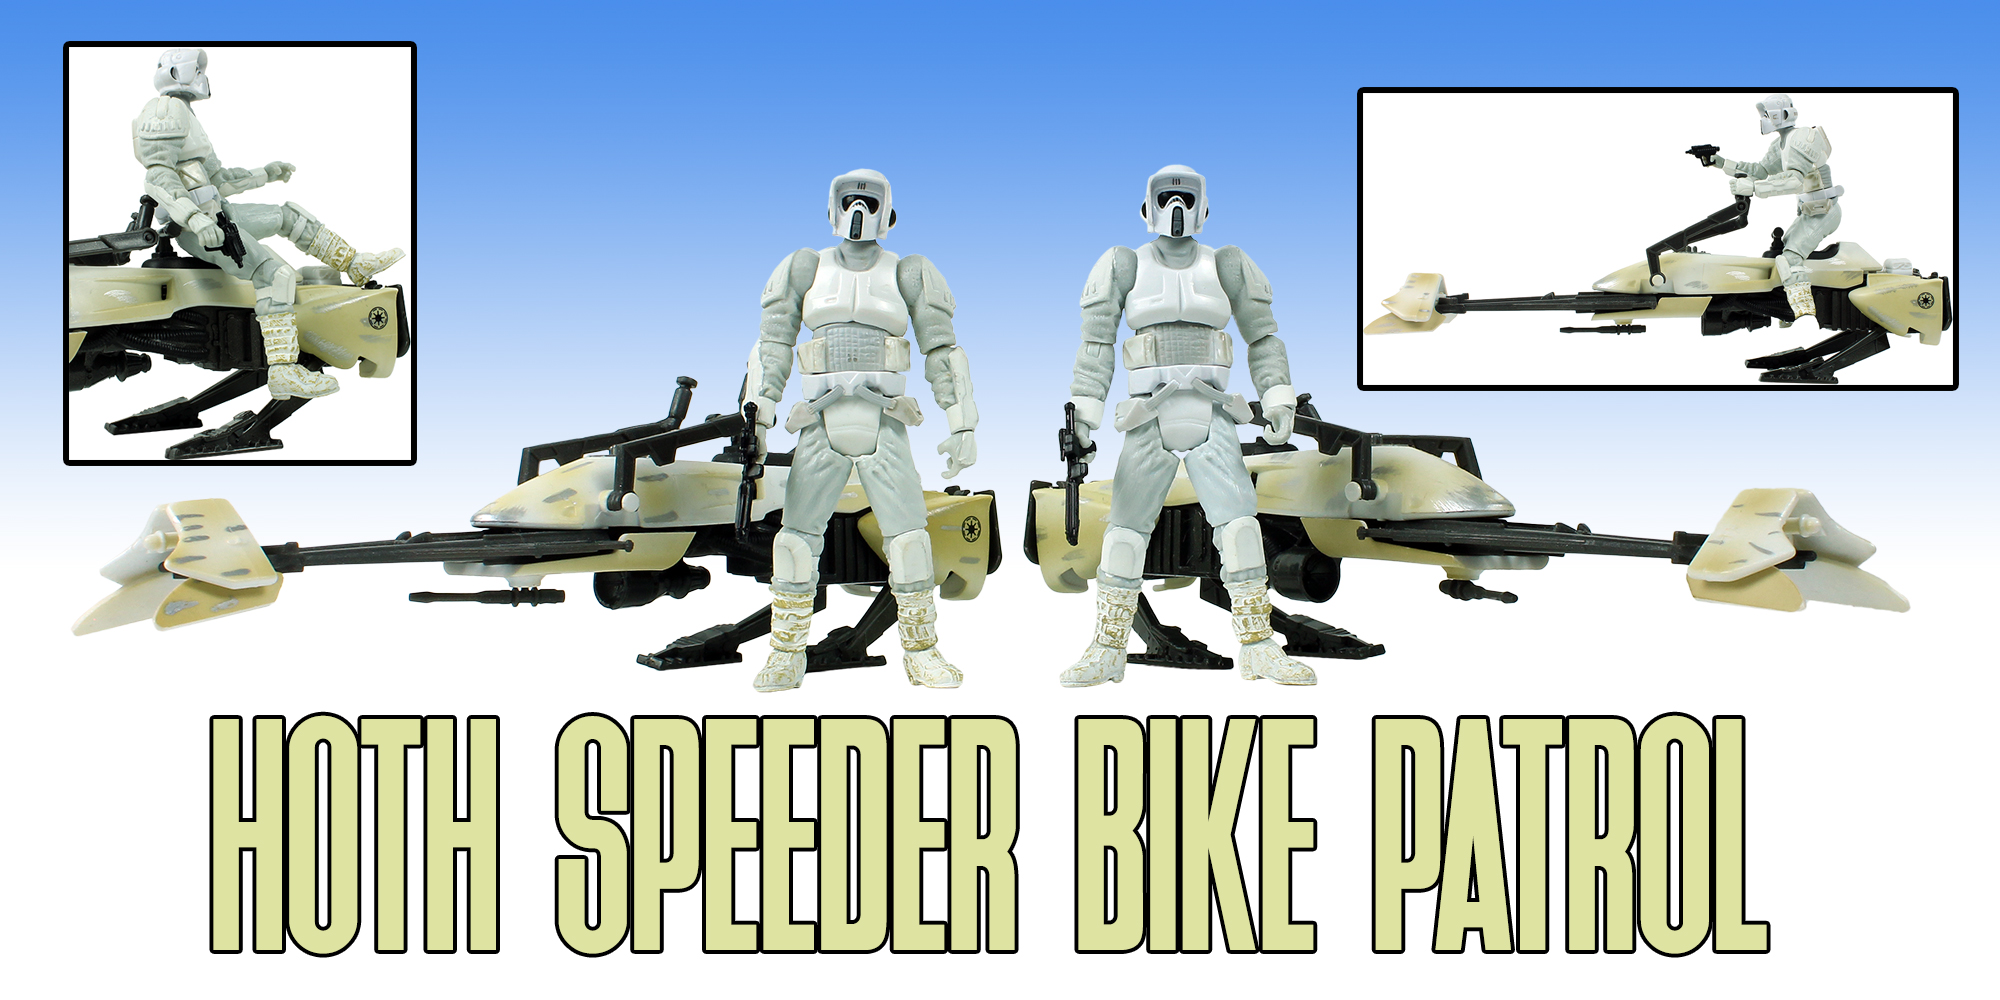 Hoth Speeder Bike Patrol Update